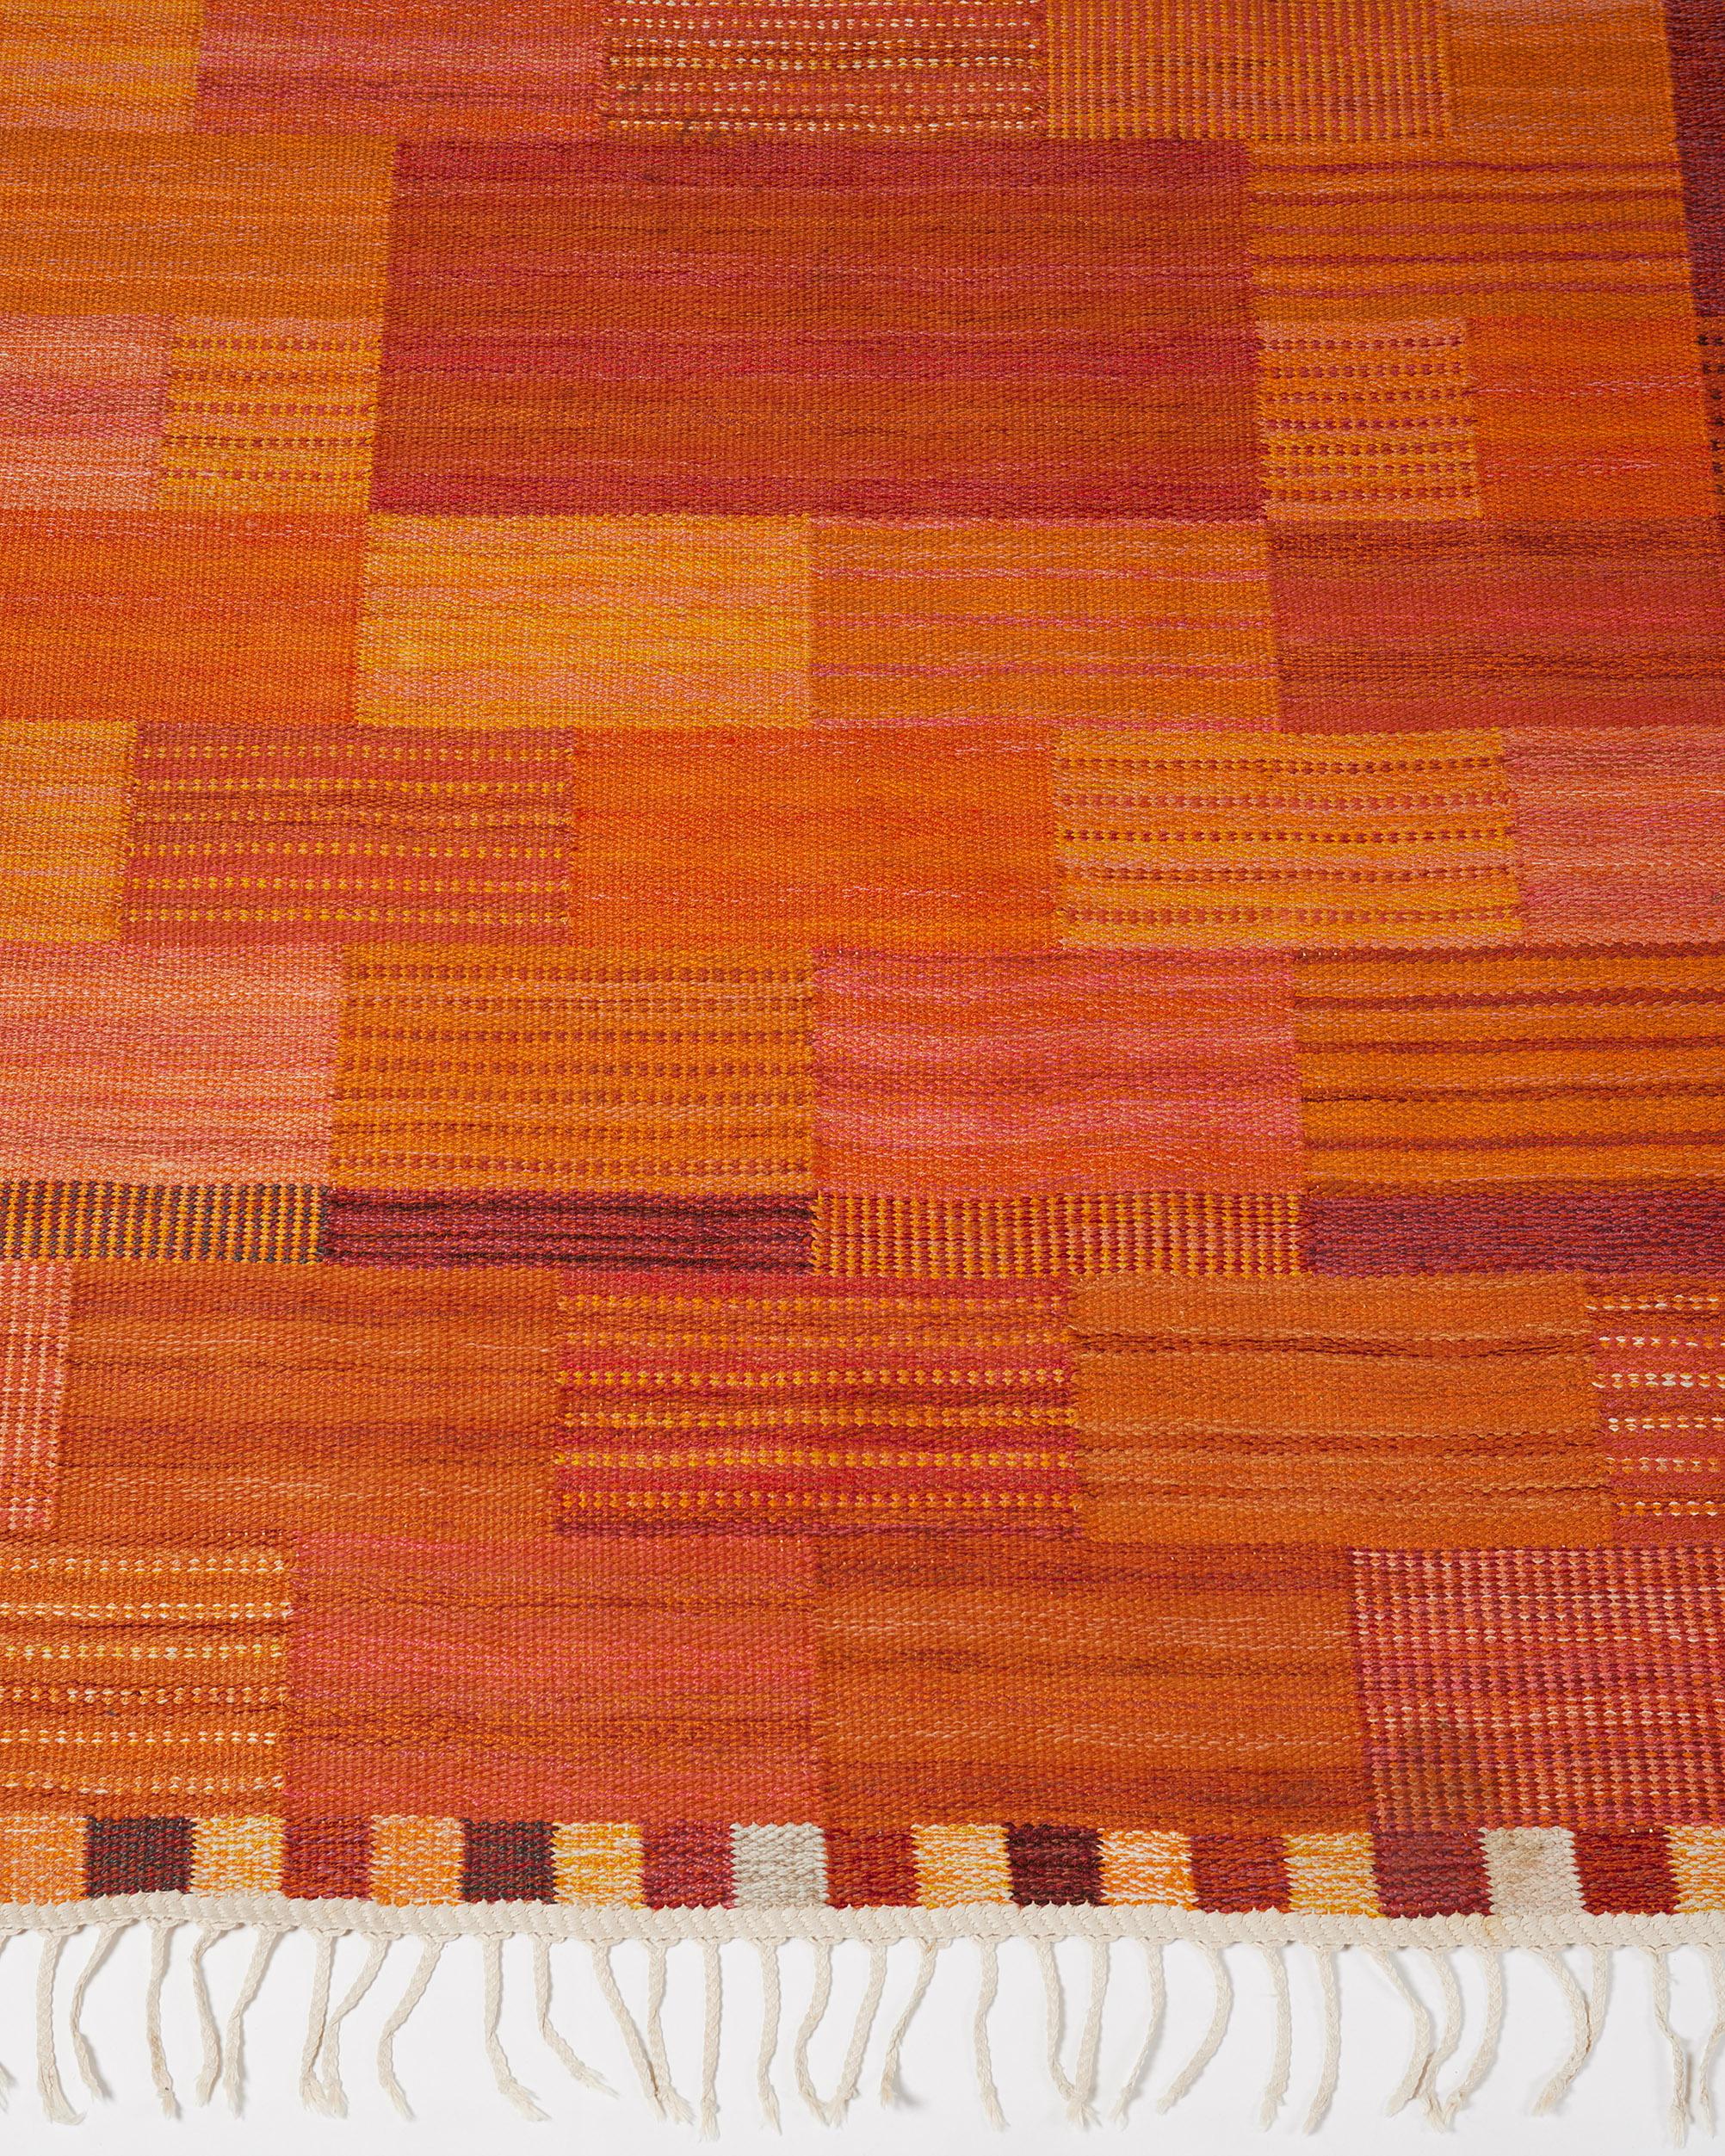 Mid-Century Modern Rug ‘Façade, Orange, Red’ Designed by Marianne Richter for MMF, Sweden, 1950s For Sale